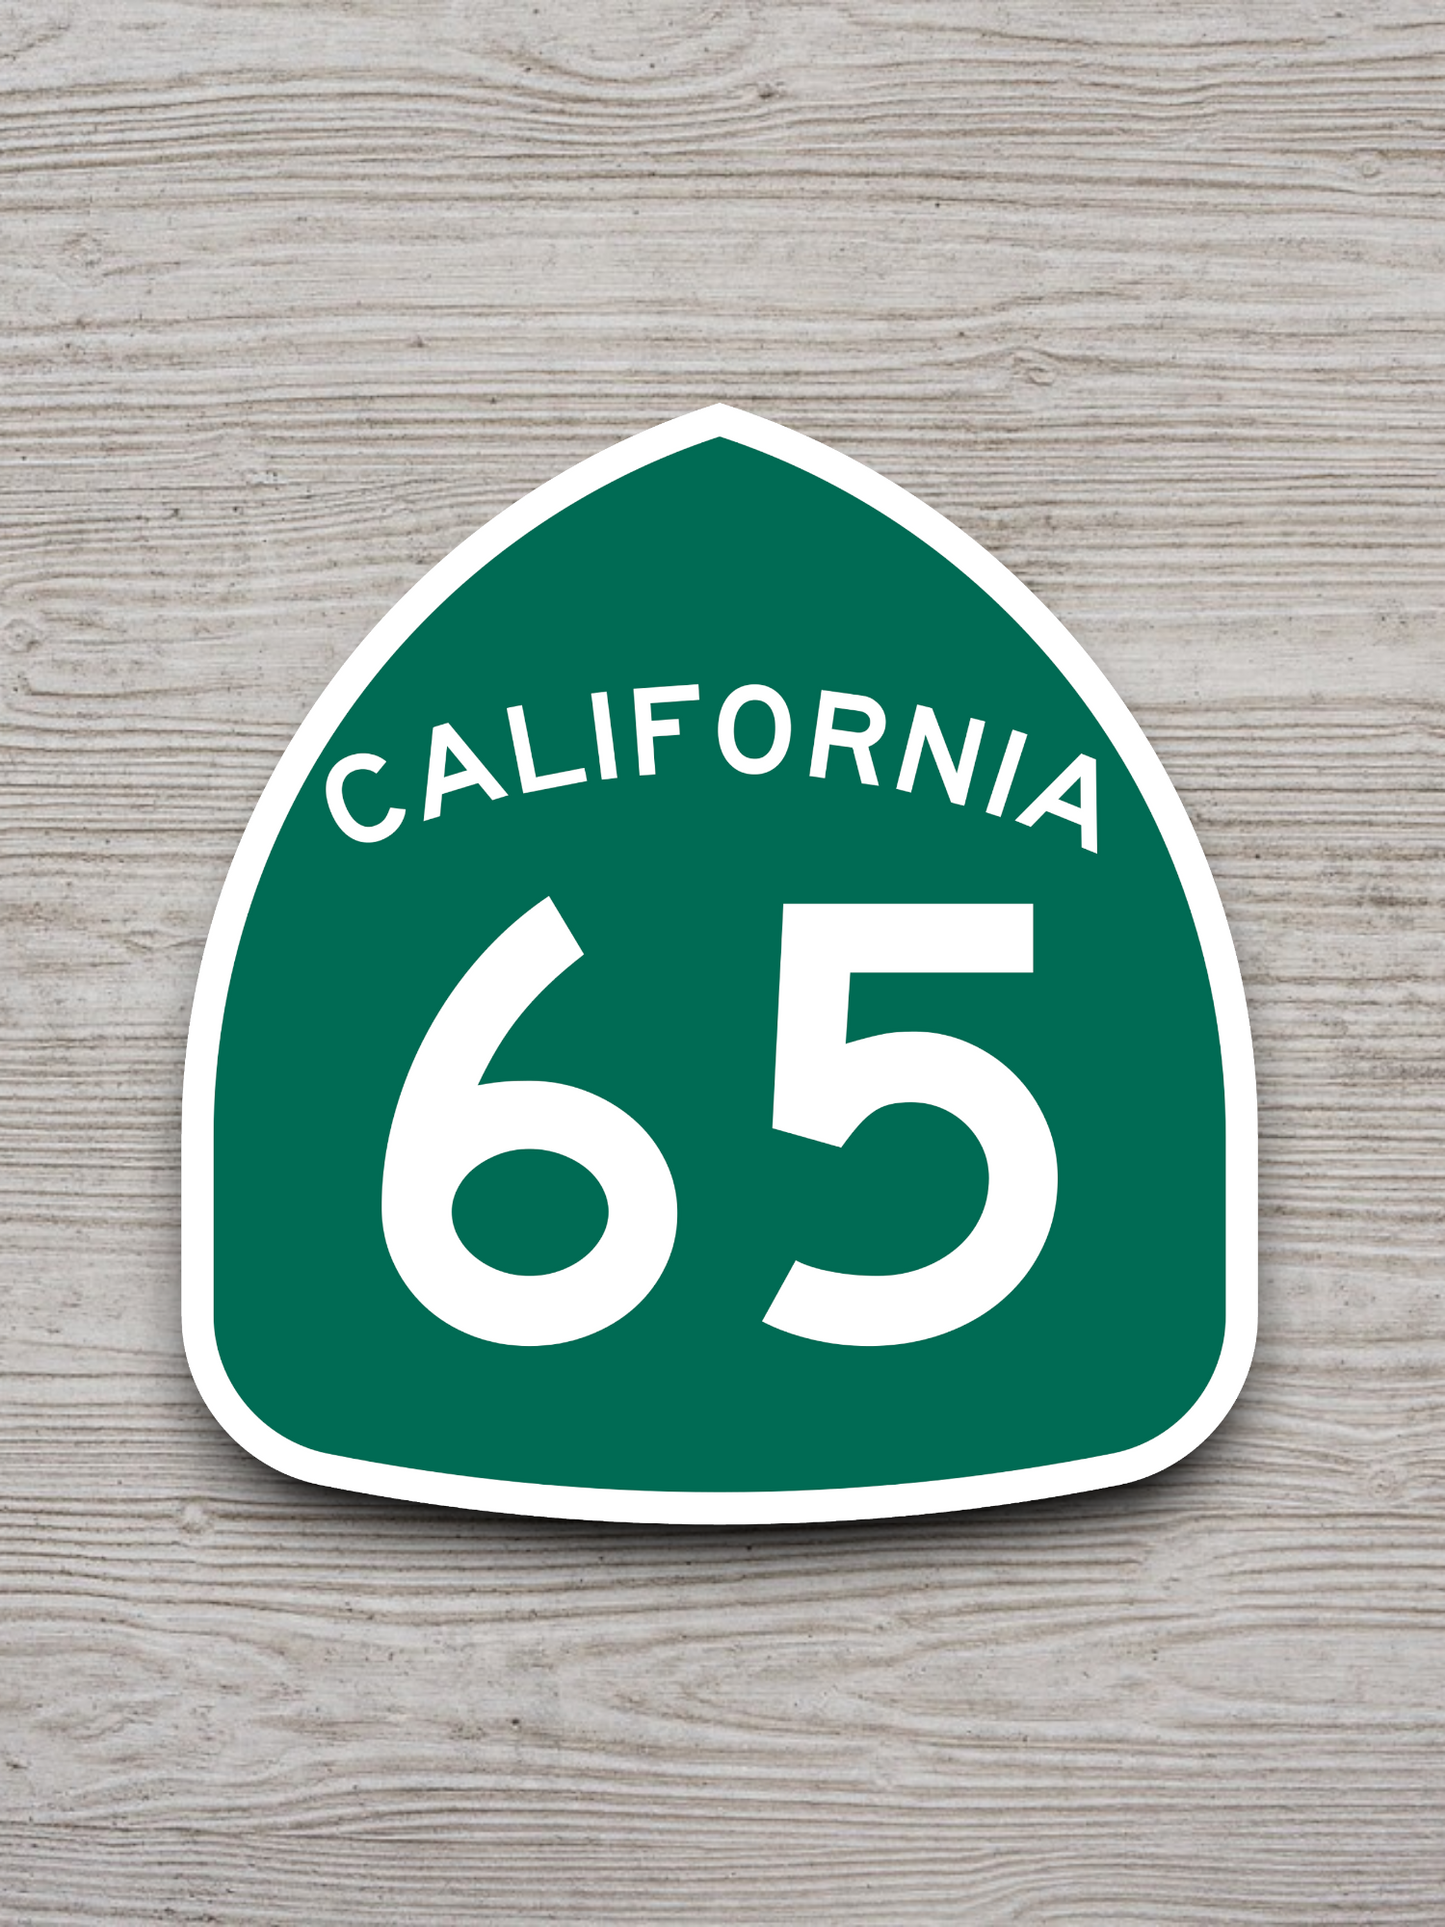 California State Route 65 Sticker